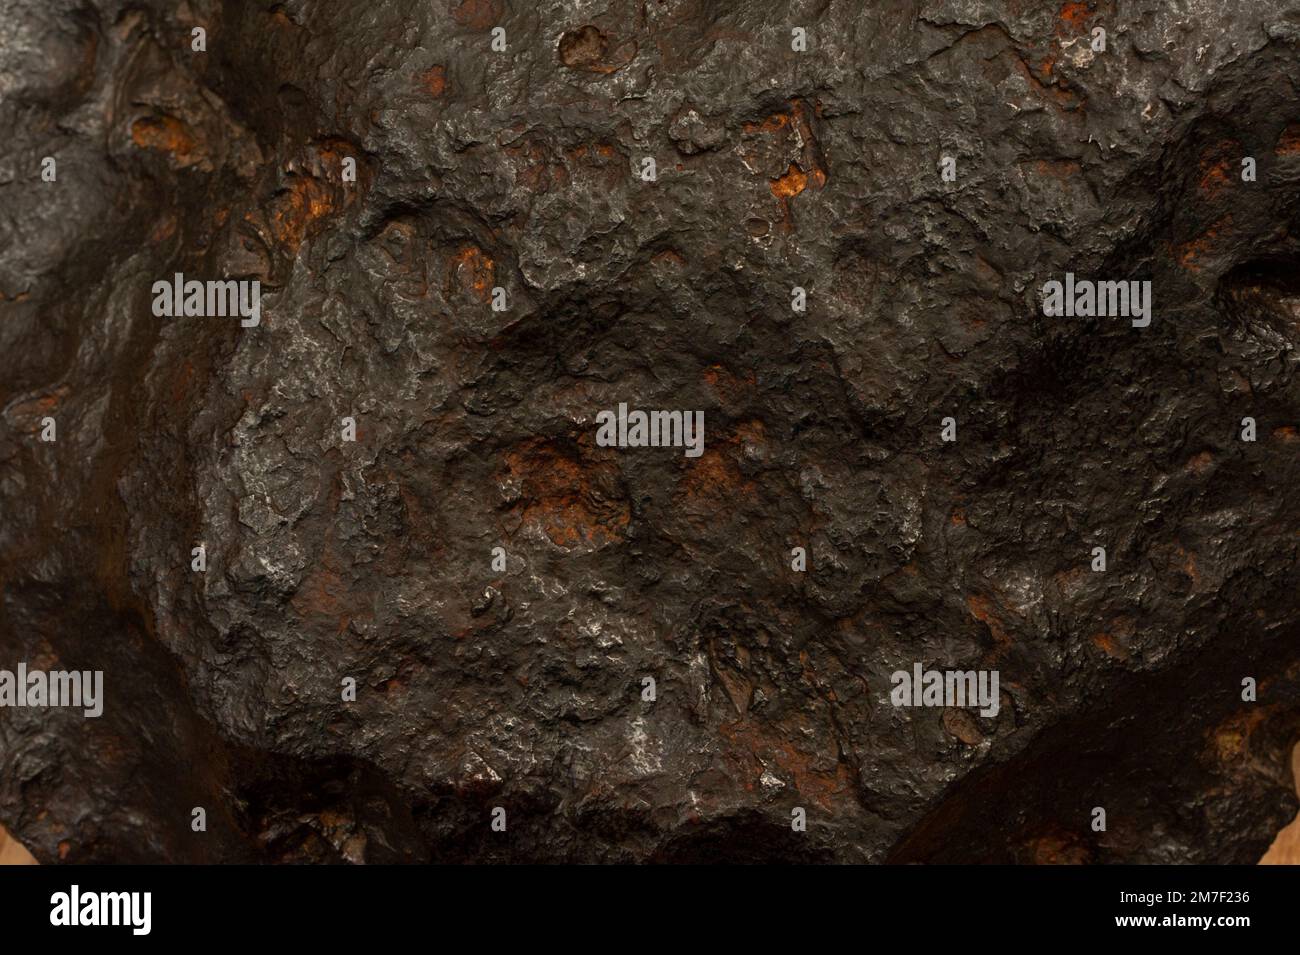 Eine Kostprobe des Nantan Meteoriten als Teil der berührbaren Felsen und Mineralien im Museum of Natural History, Oxford. Stockfoto